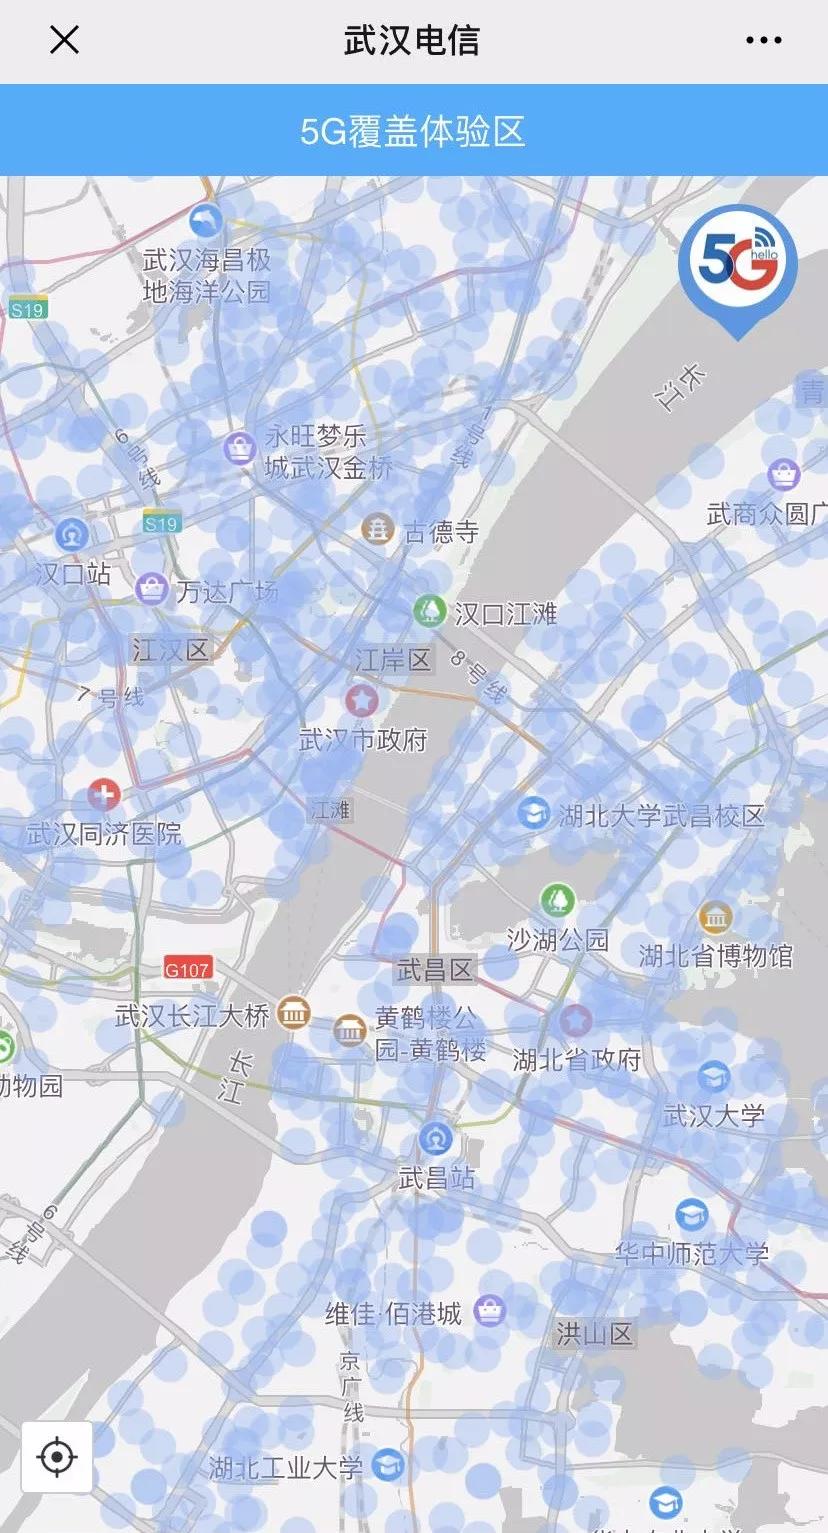 目前武汉的5g基站约5000座,市内5g覆盖点众多,中国电信在